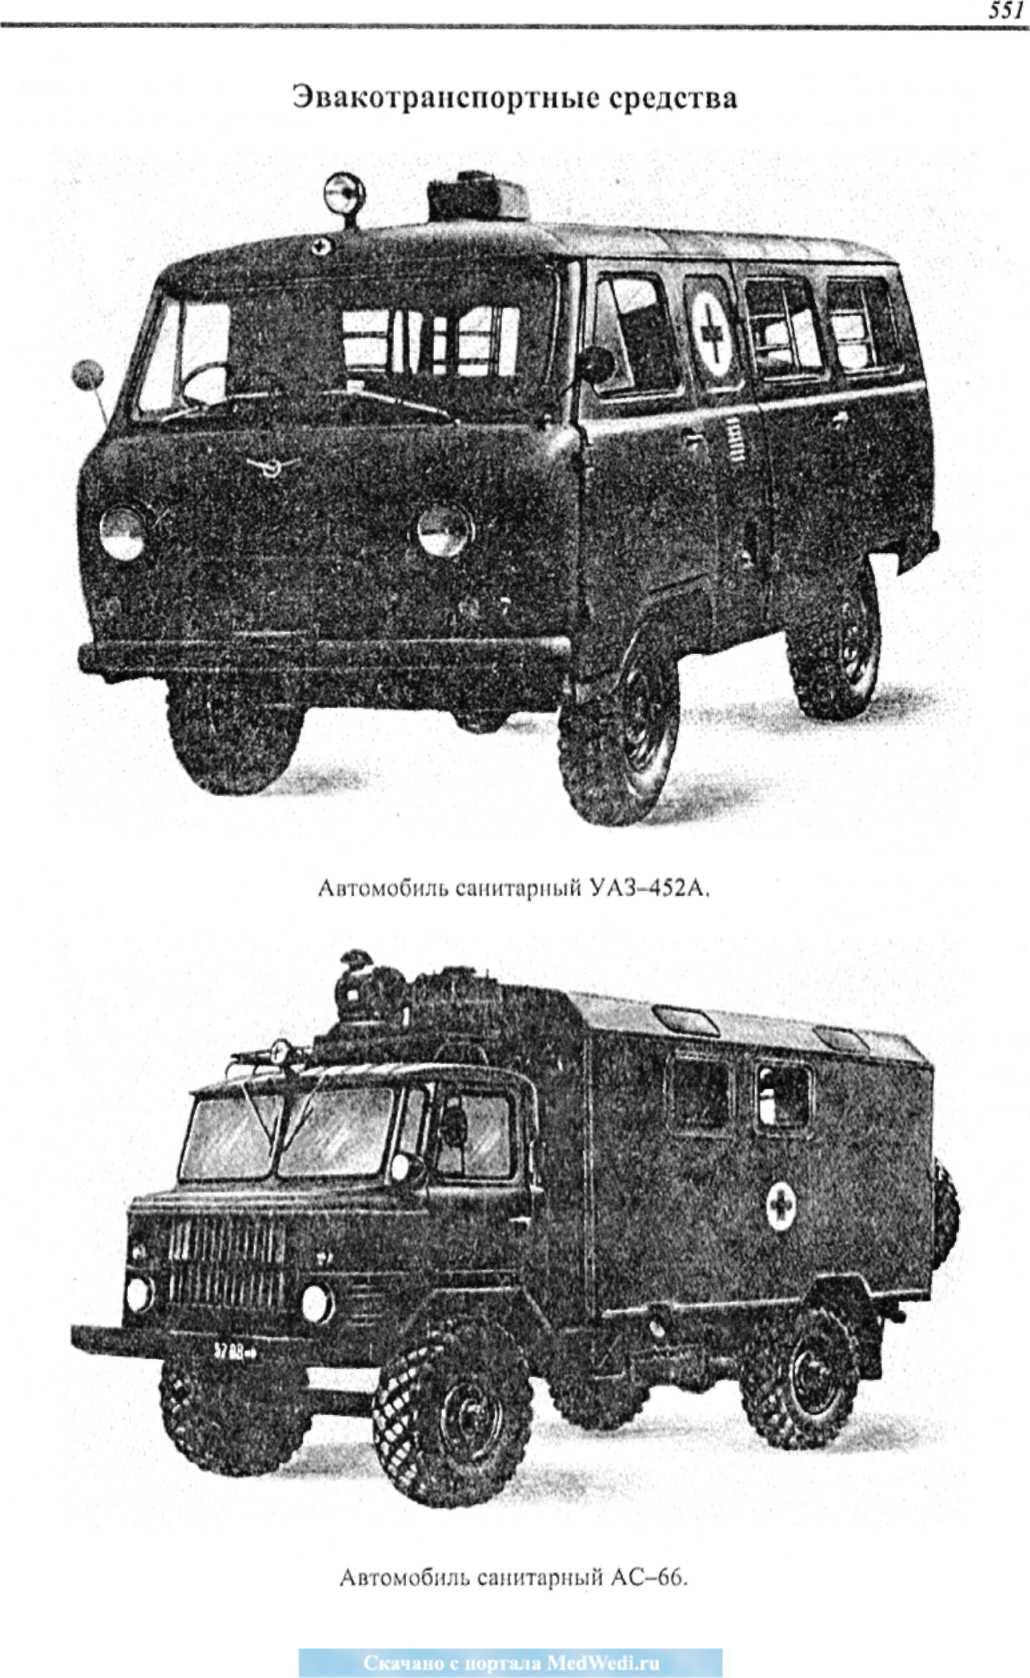 УАЗ-452а санитарный автомобиль